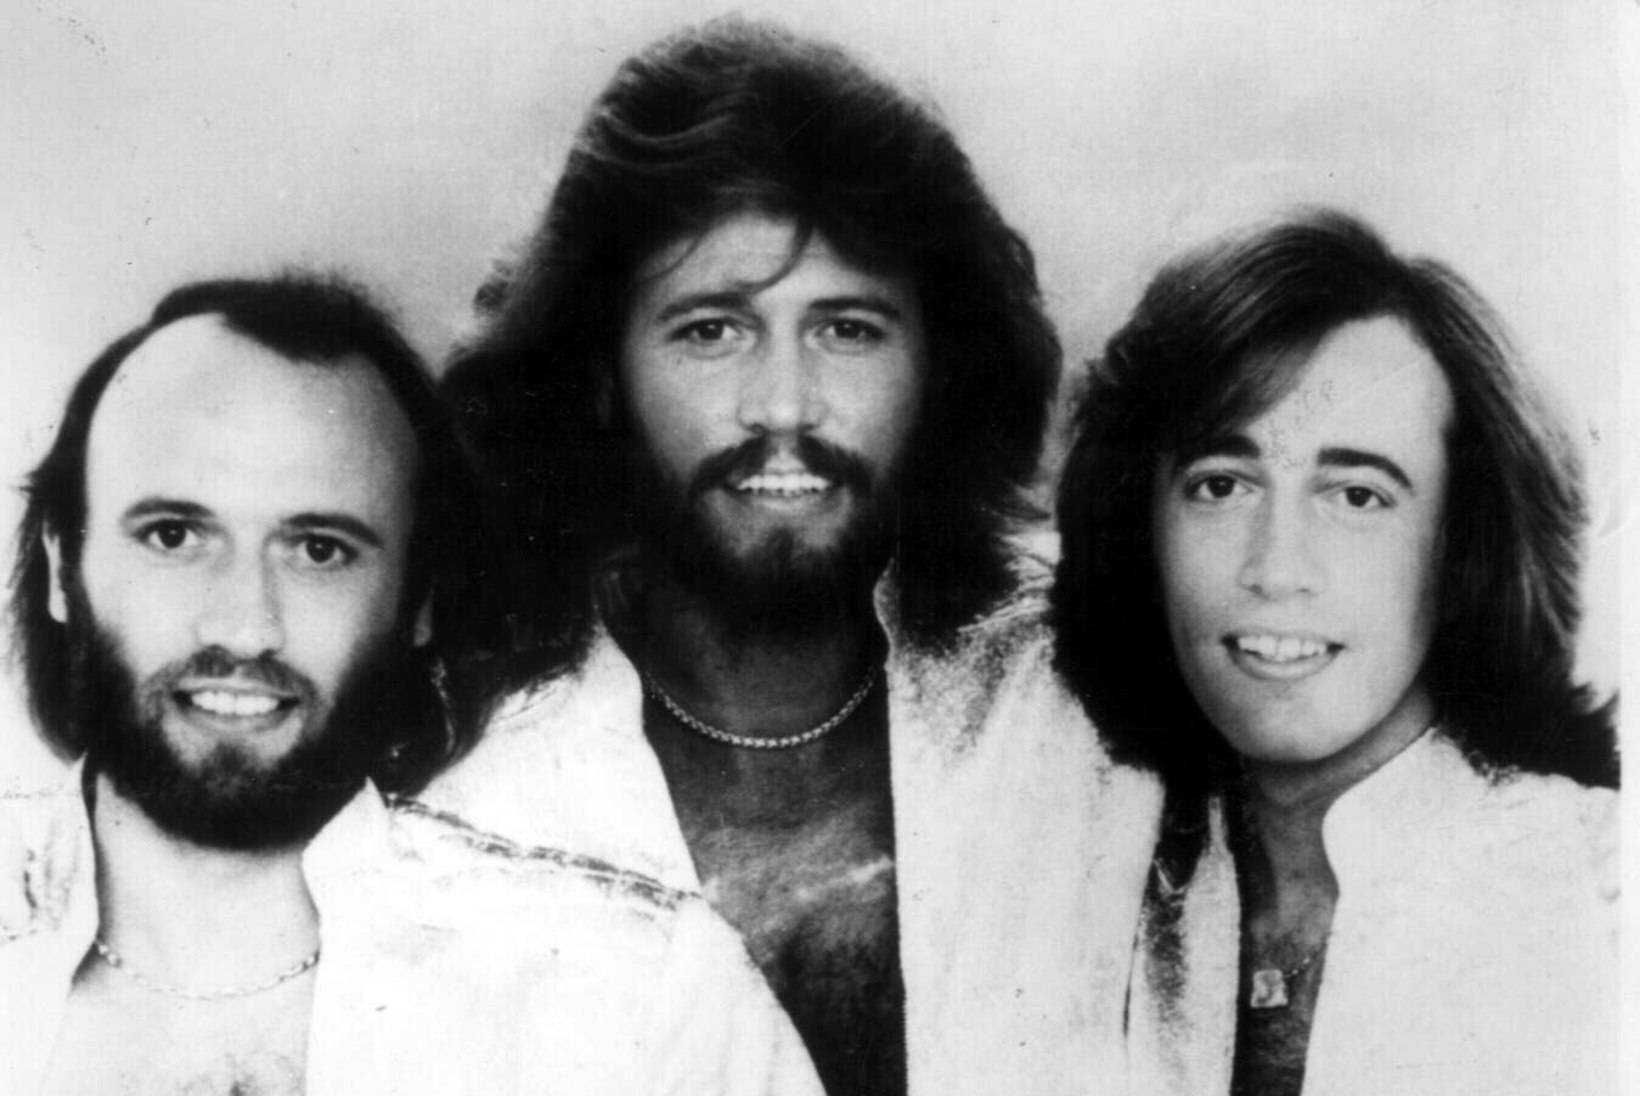 The Bee Geesi lauljat kuritarvitati lapsepõlves seksuaalselt